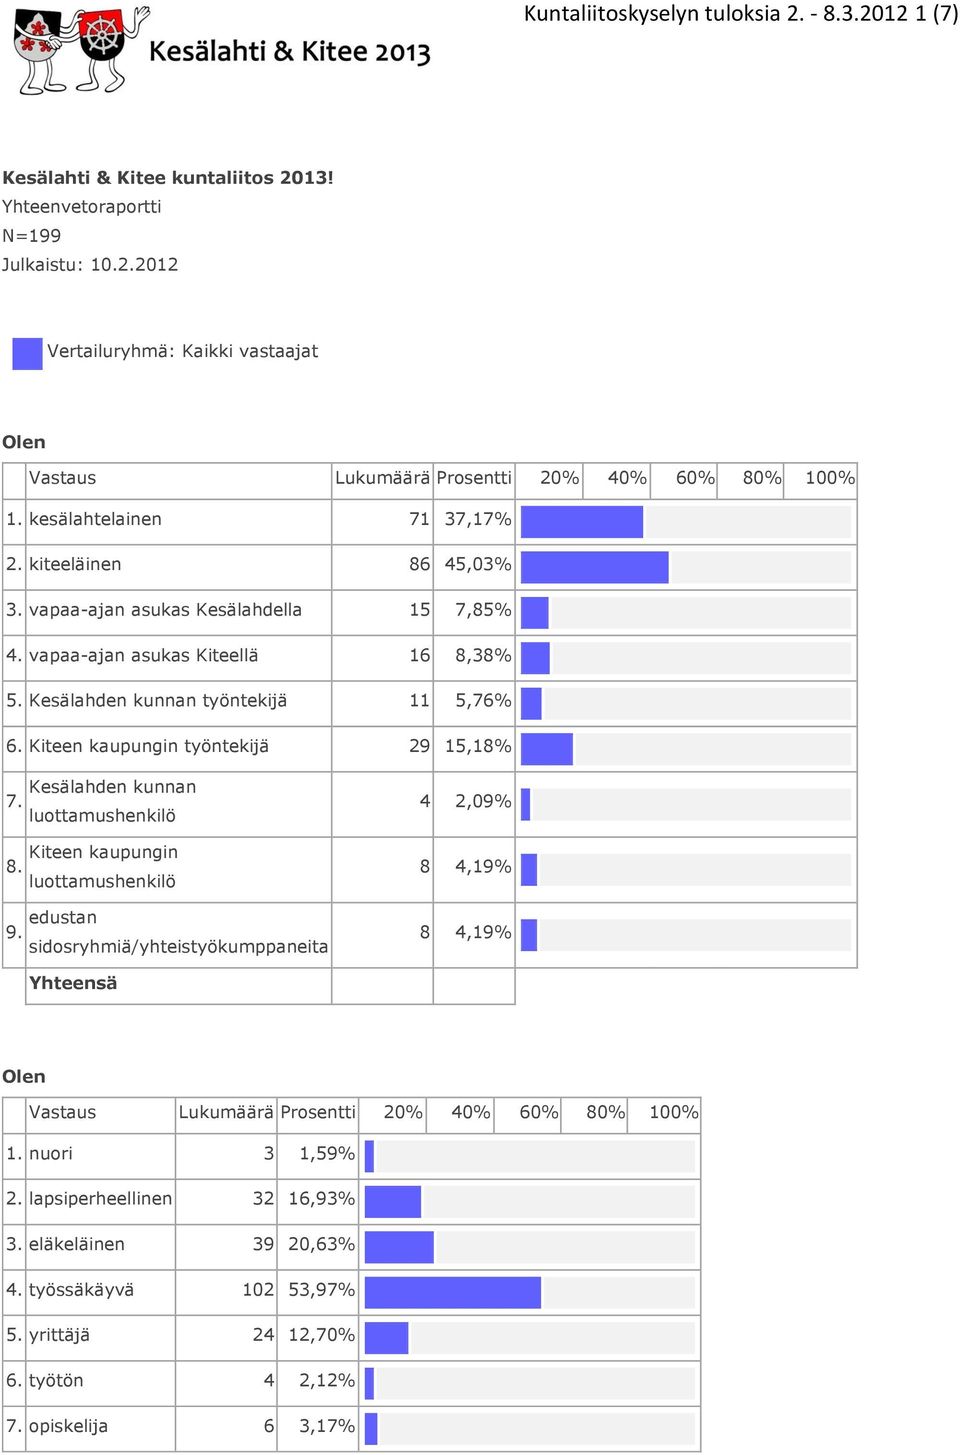 Kiteen kaupungin työntekijä 29 15,18% Kesälahden kunnan 7. luottamushenkilö Kiteen kaupungin 8. luottamushenkilö 9.